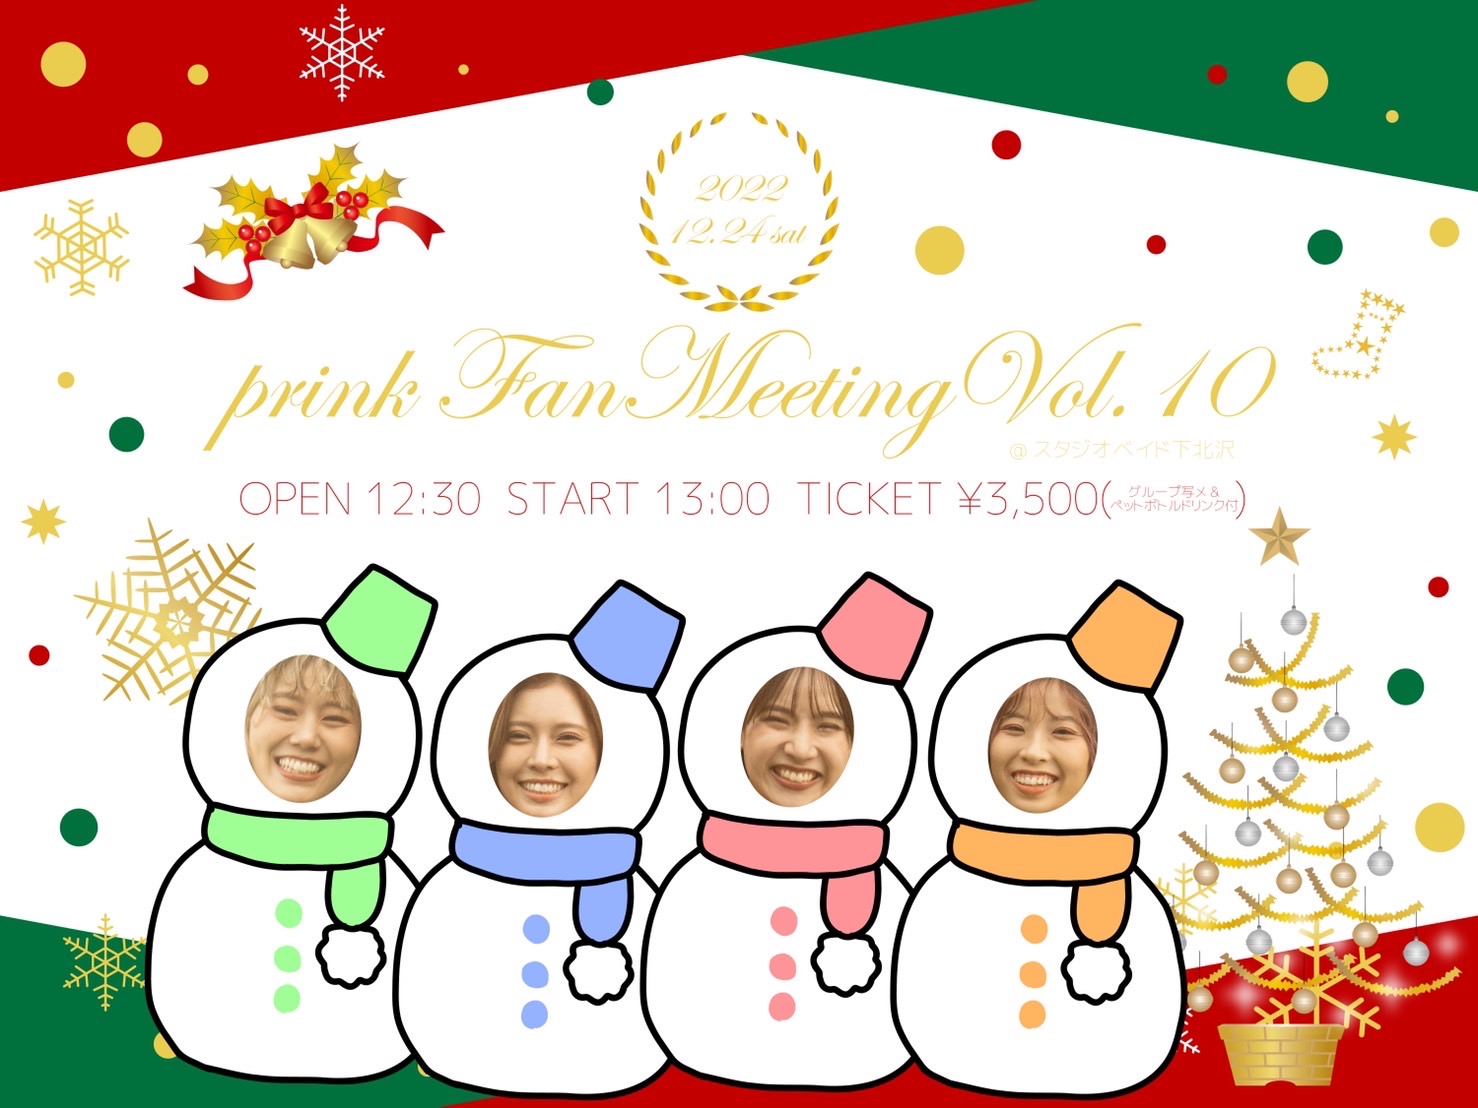 【ファンイベント】prink Family Meeting Vol.10〜Wish 4 Peaceful Christmas!!〜（東京・世田谷）